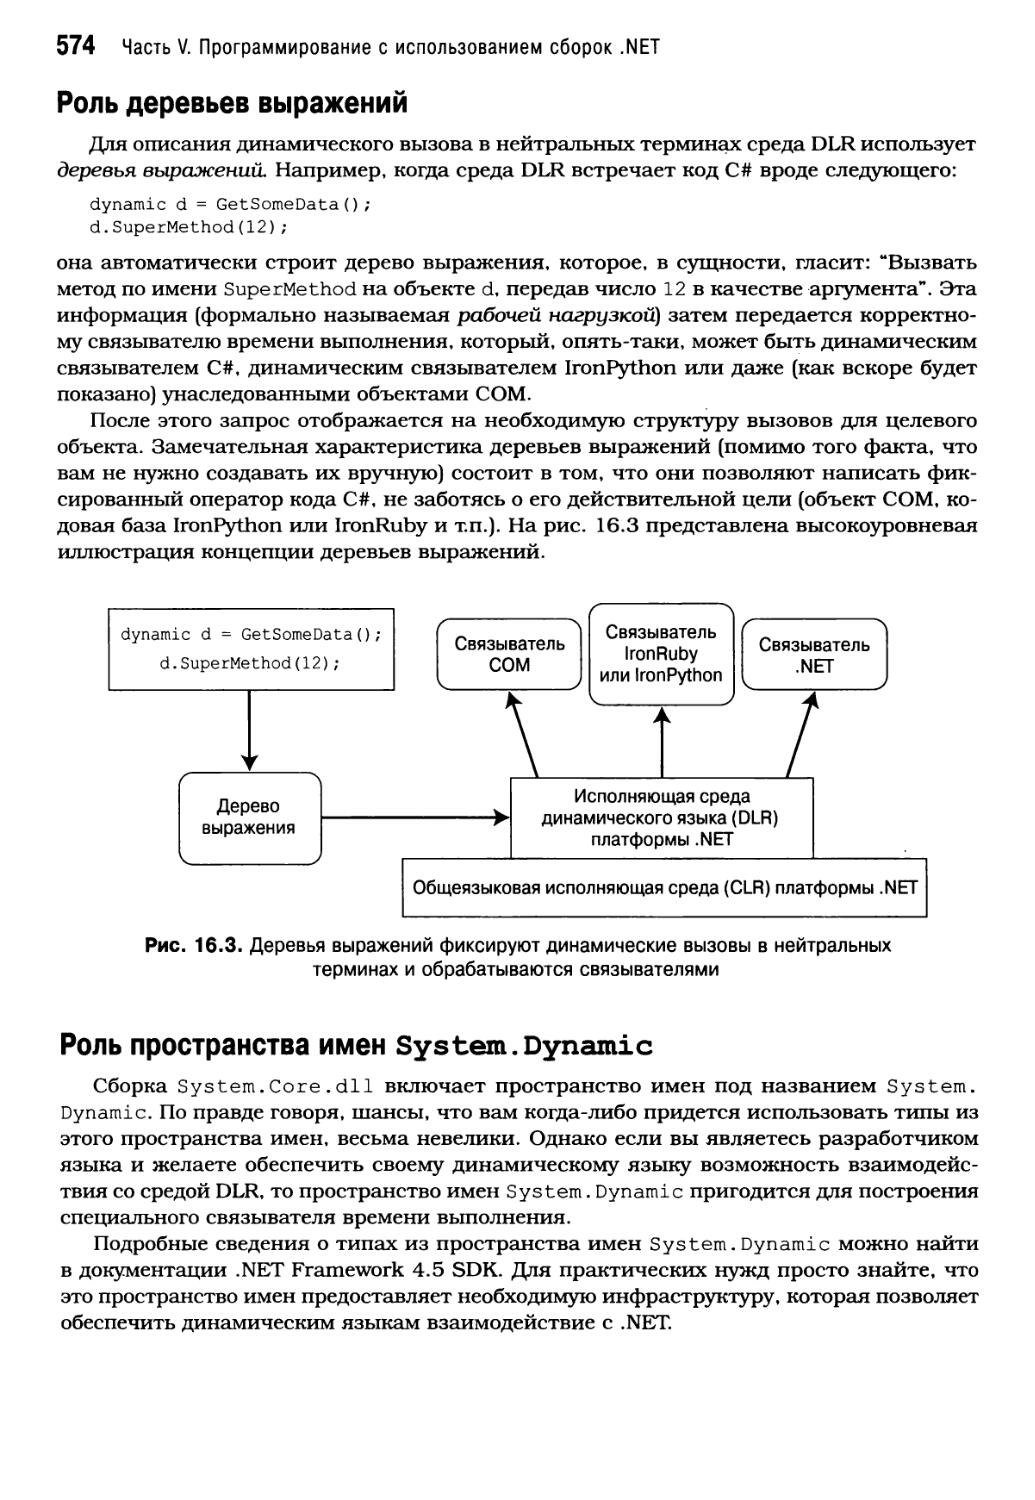 Роль деревьев выражений
Роль пространства имен System. Dynamic